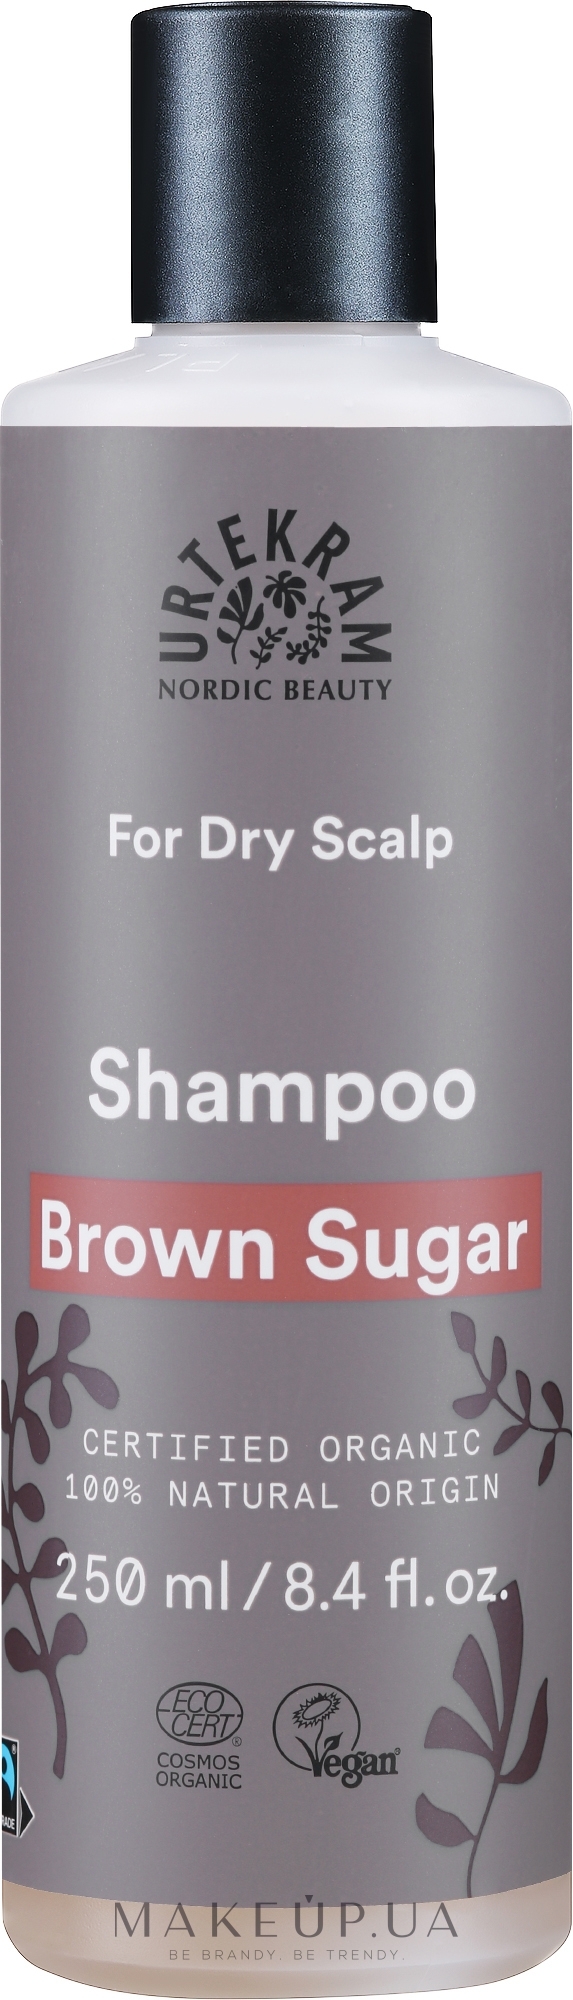 Шампунь с тростниковым сахаром для дополнительного объема - Urtekram Brown Sugar Shampoo Dry Scalp — фото 250ml